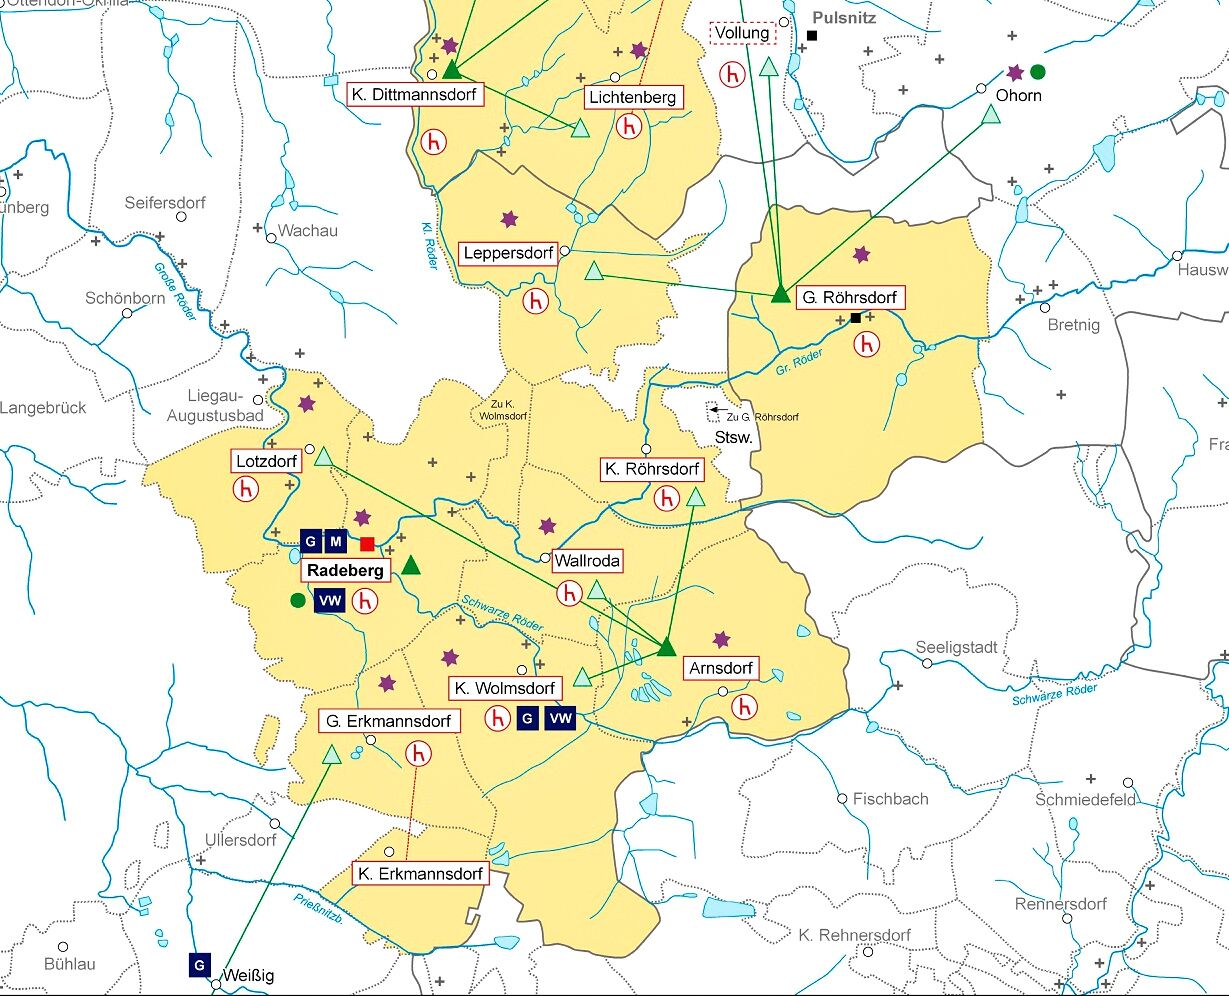 Ausschnitt aus dem Plan des Amtes zu Radeberg von 1551. Die Amtsgebiete sind gelb hinterlegt.